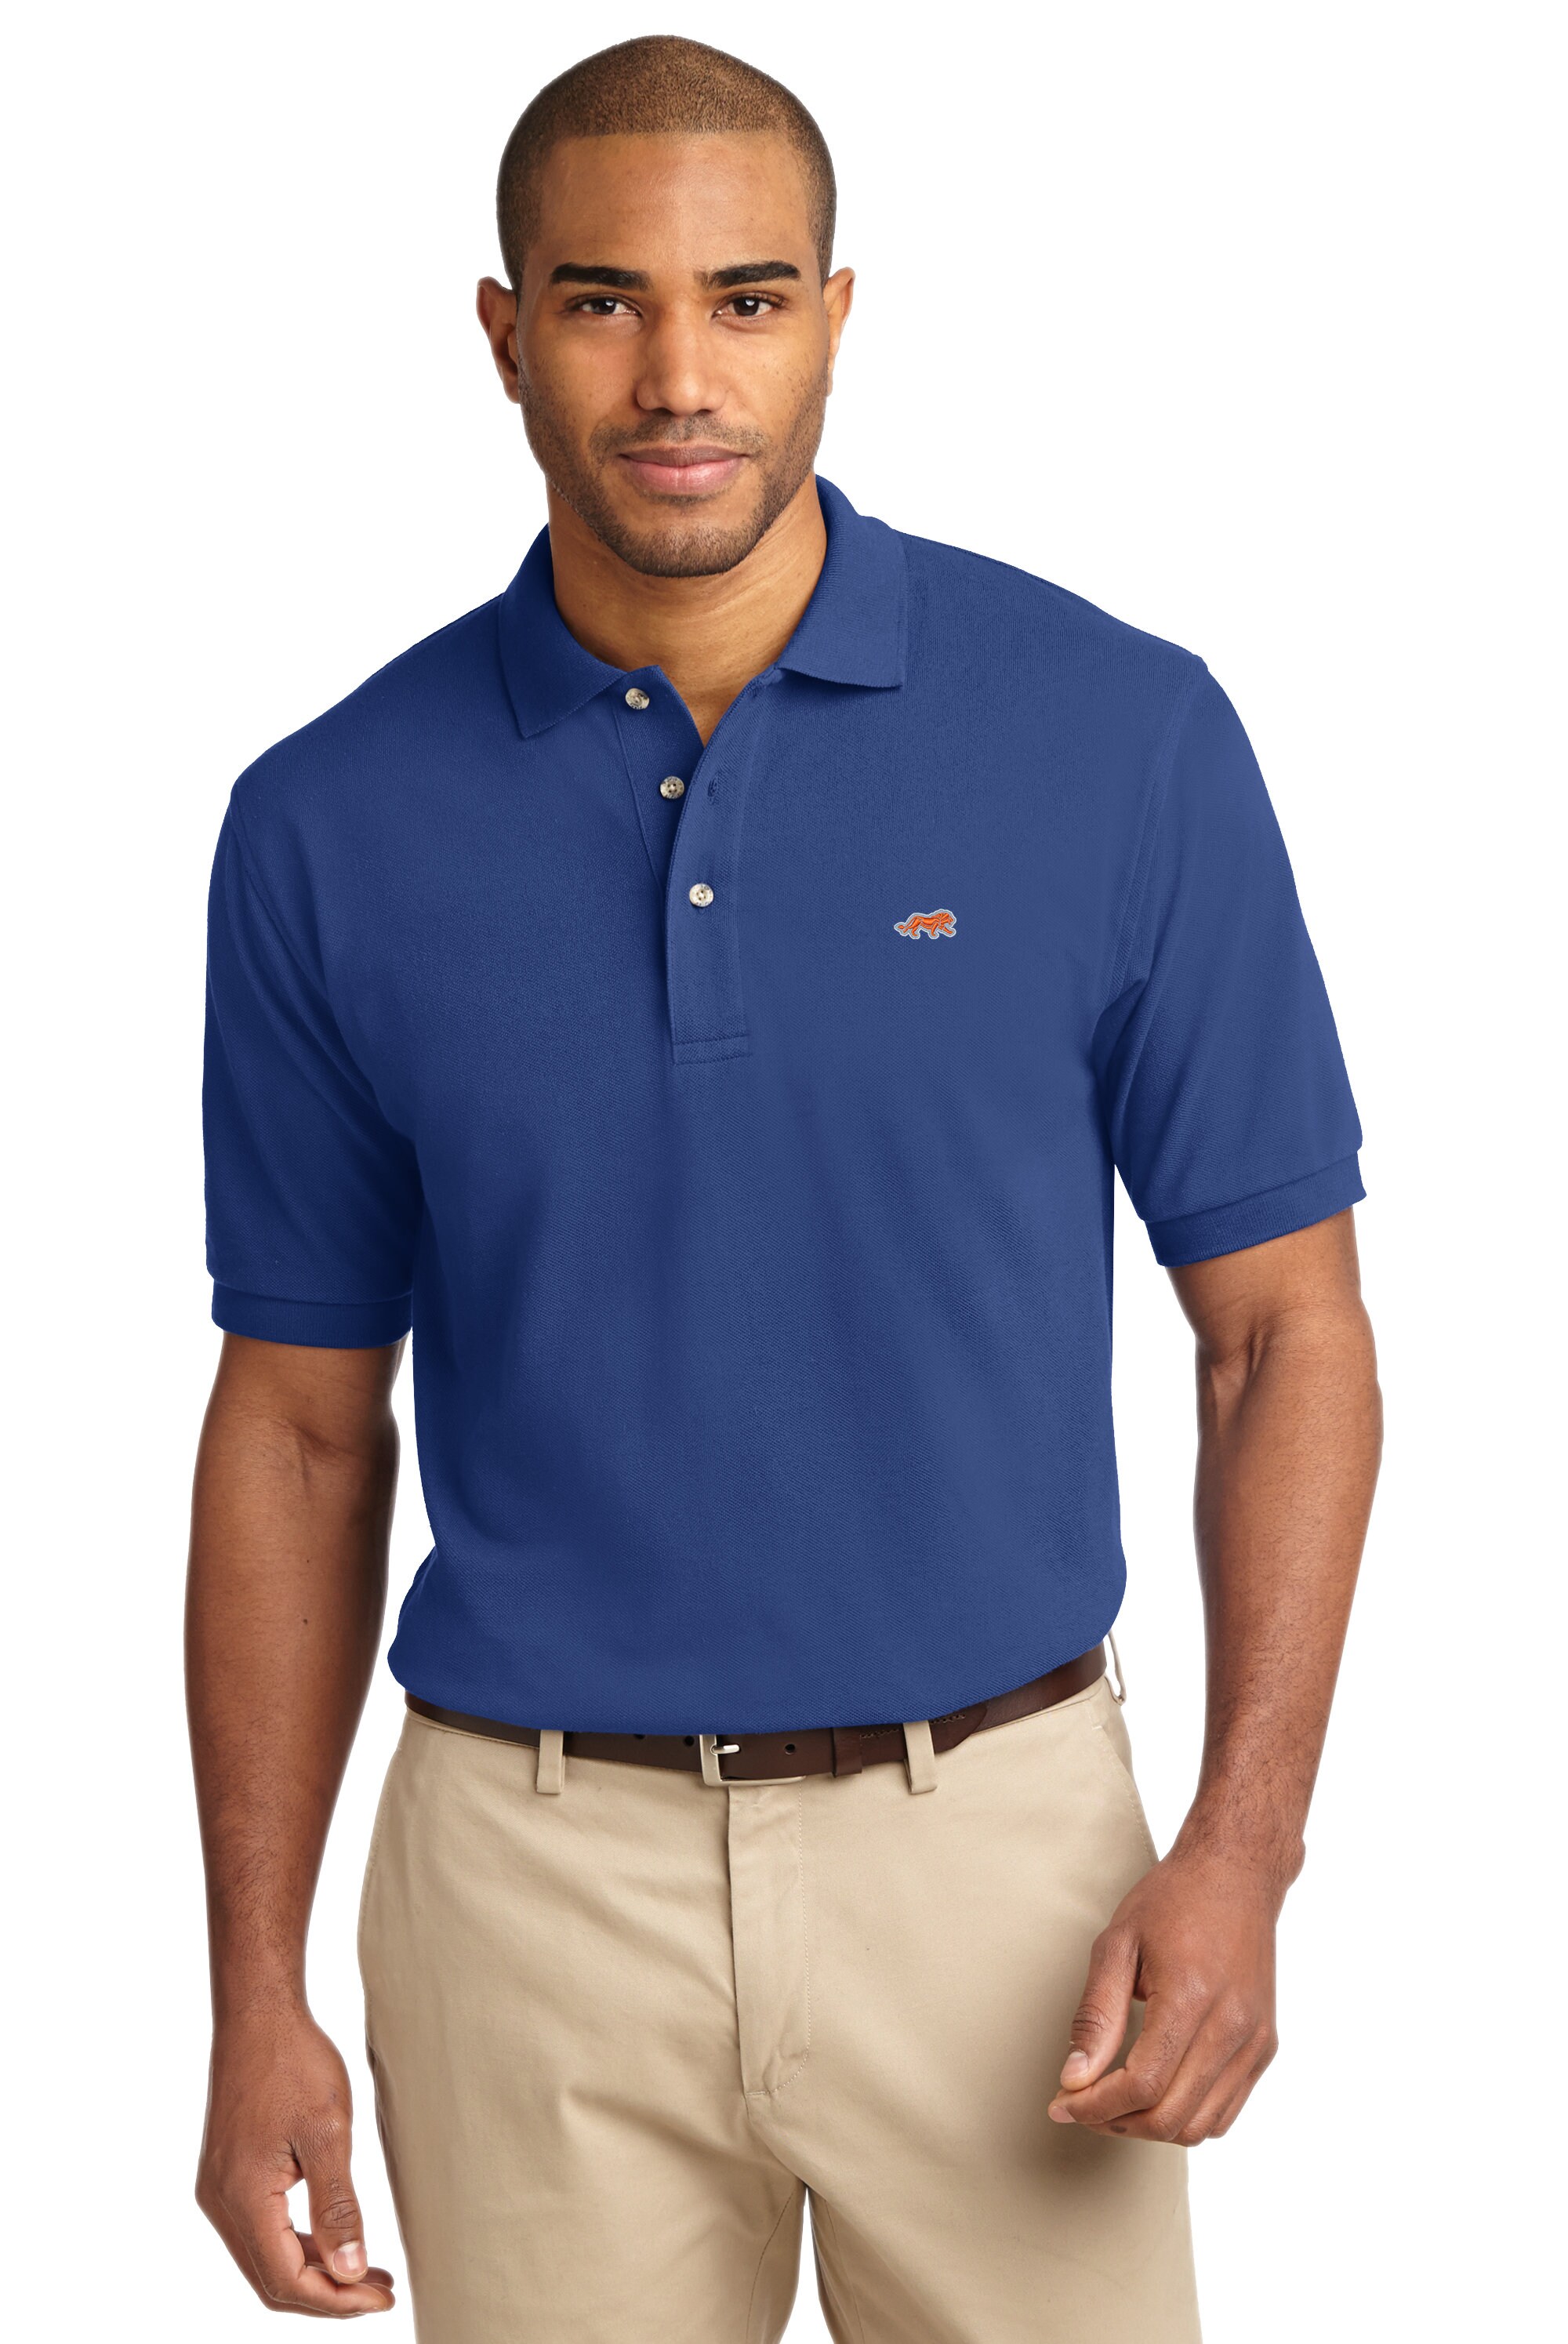 Now Customizable Kleding Herenkleding Overhemden & T-shirts Polos Men's Tru Lion Polo by N3Kit LLC 